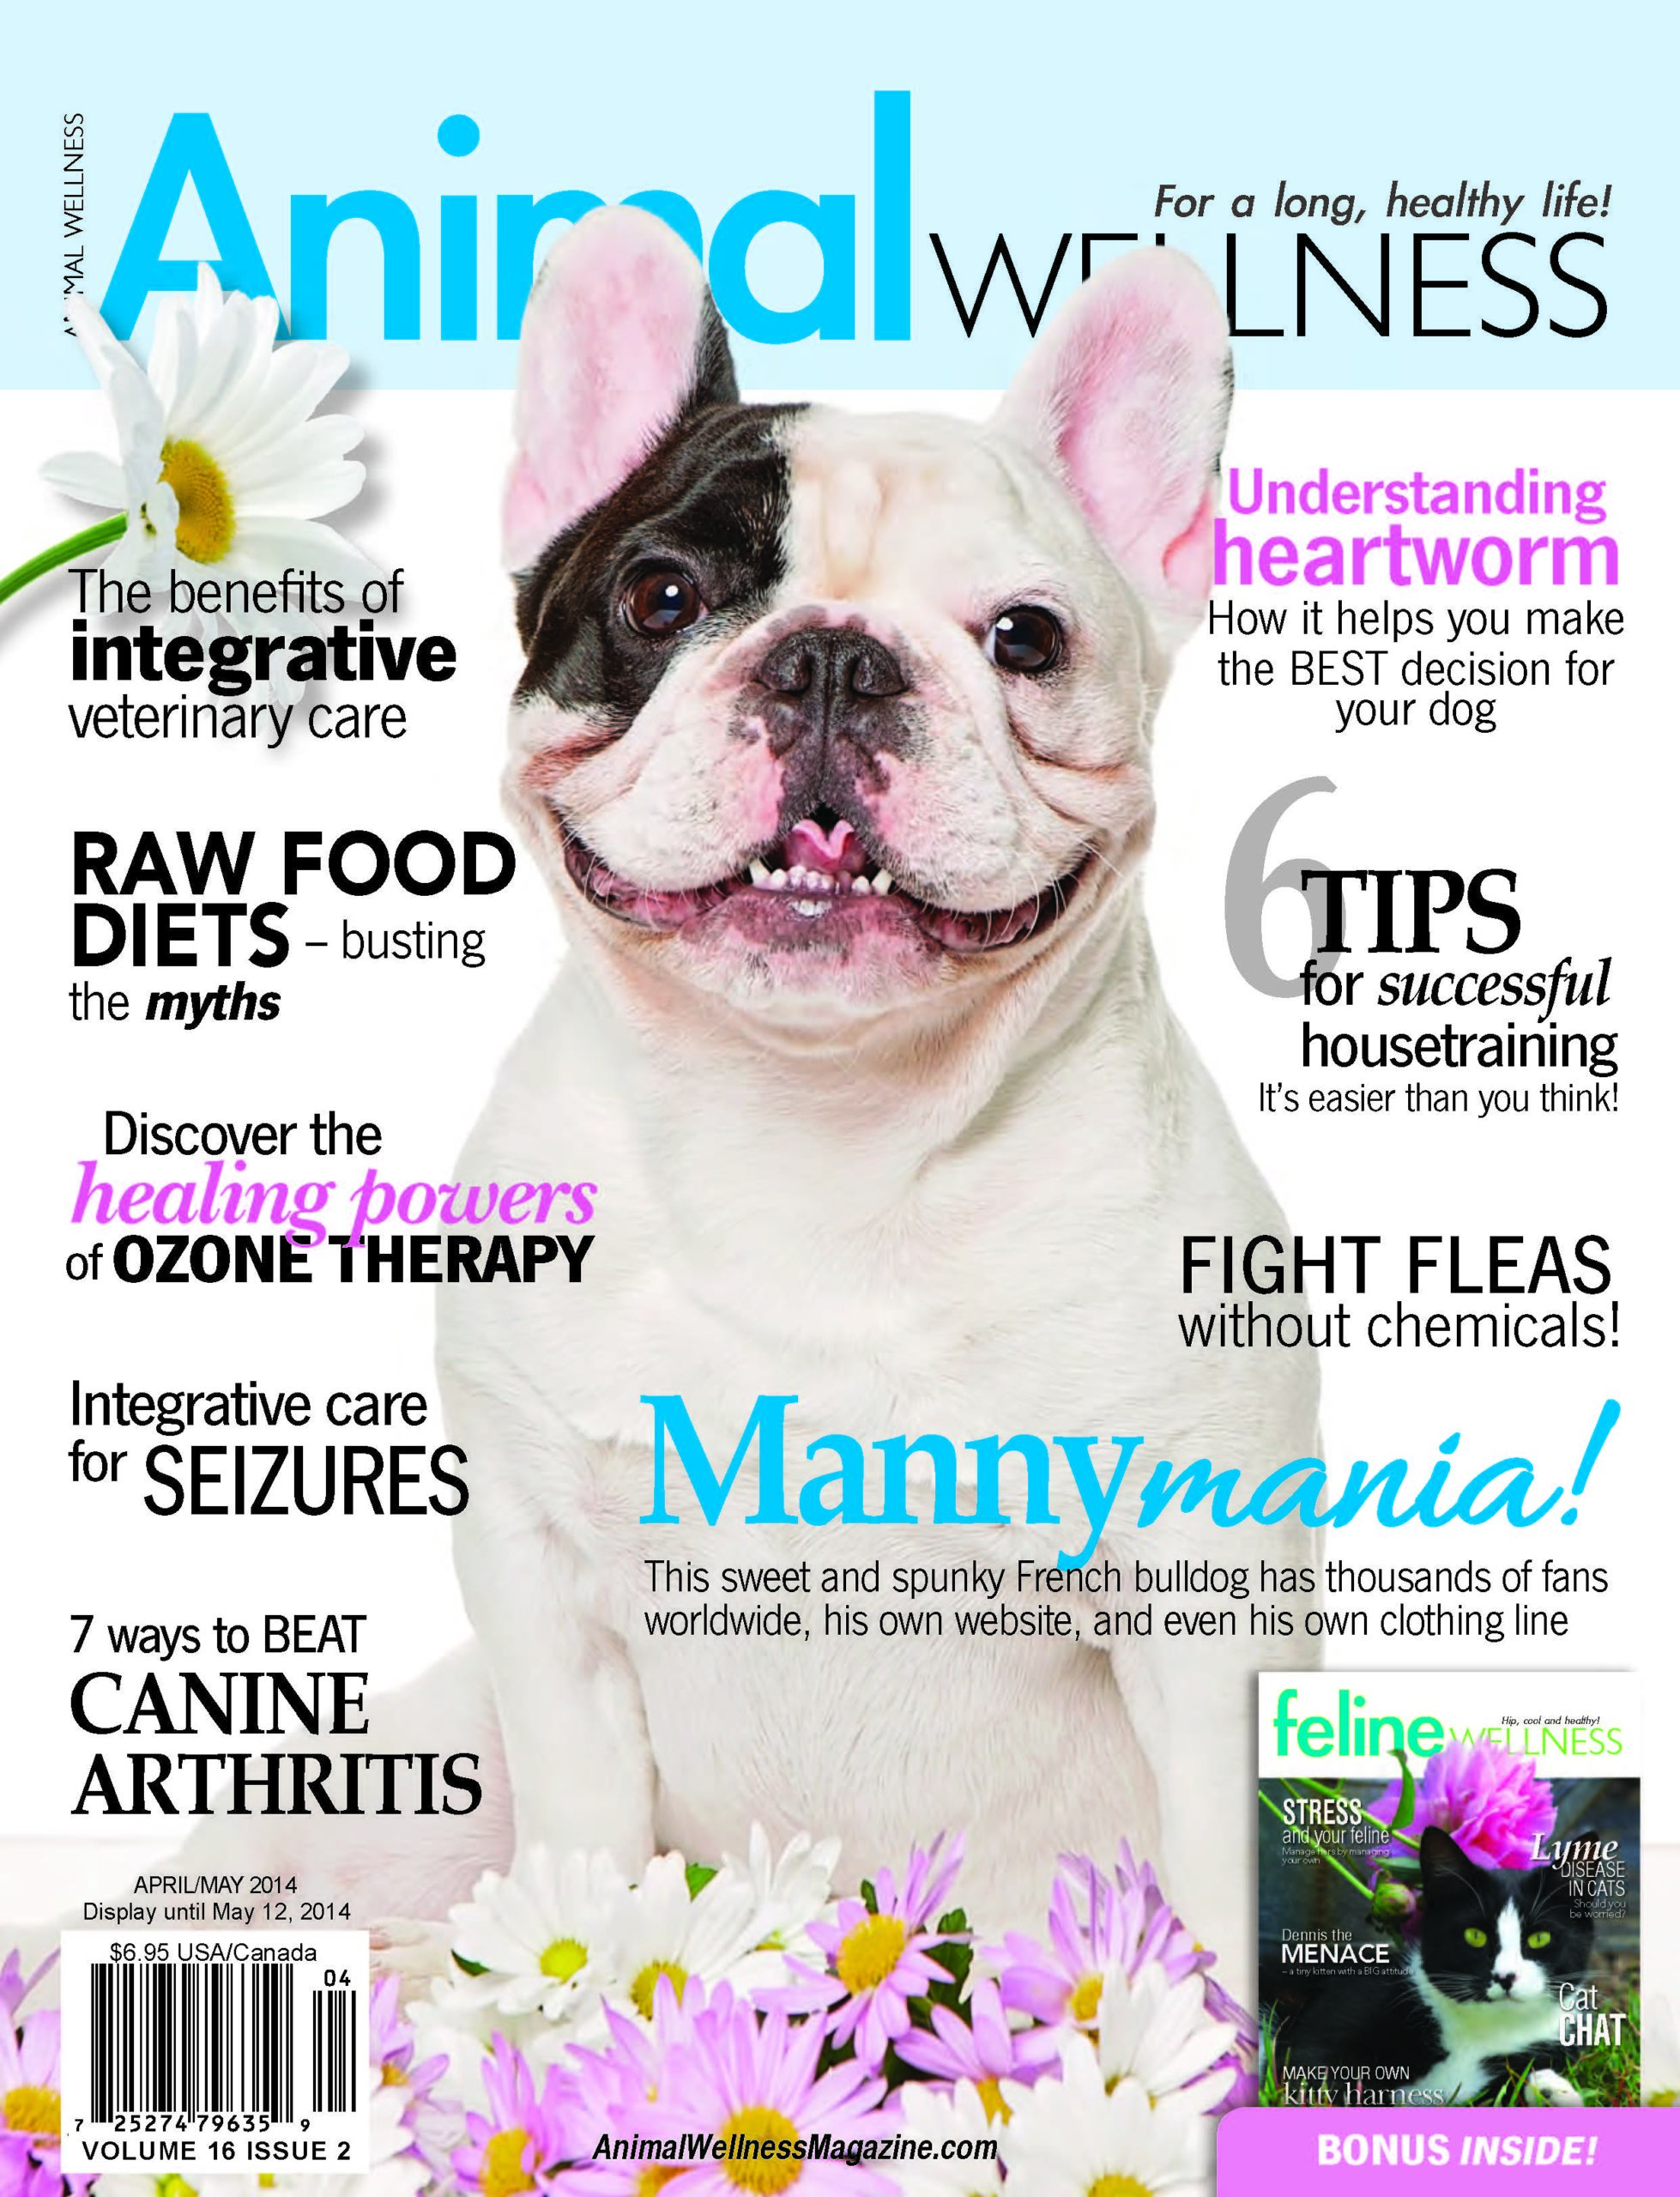 Revista de bienestar animal: La magia de Manny y la dieta de su Evanger